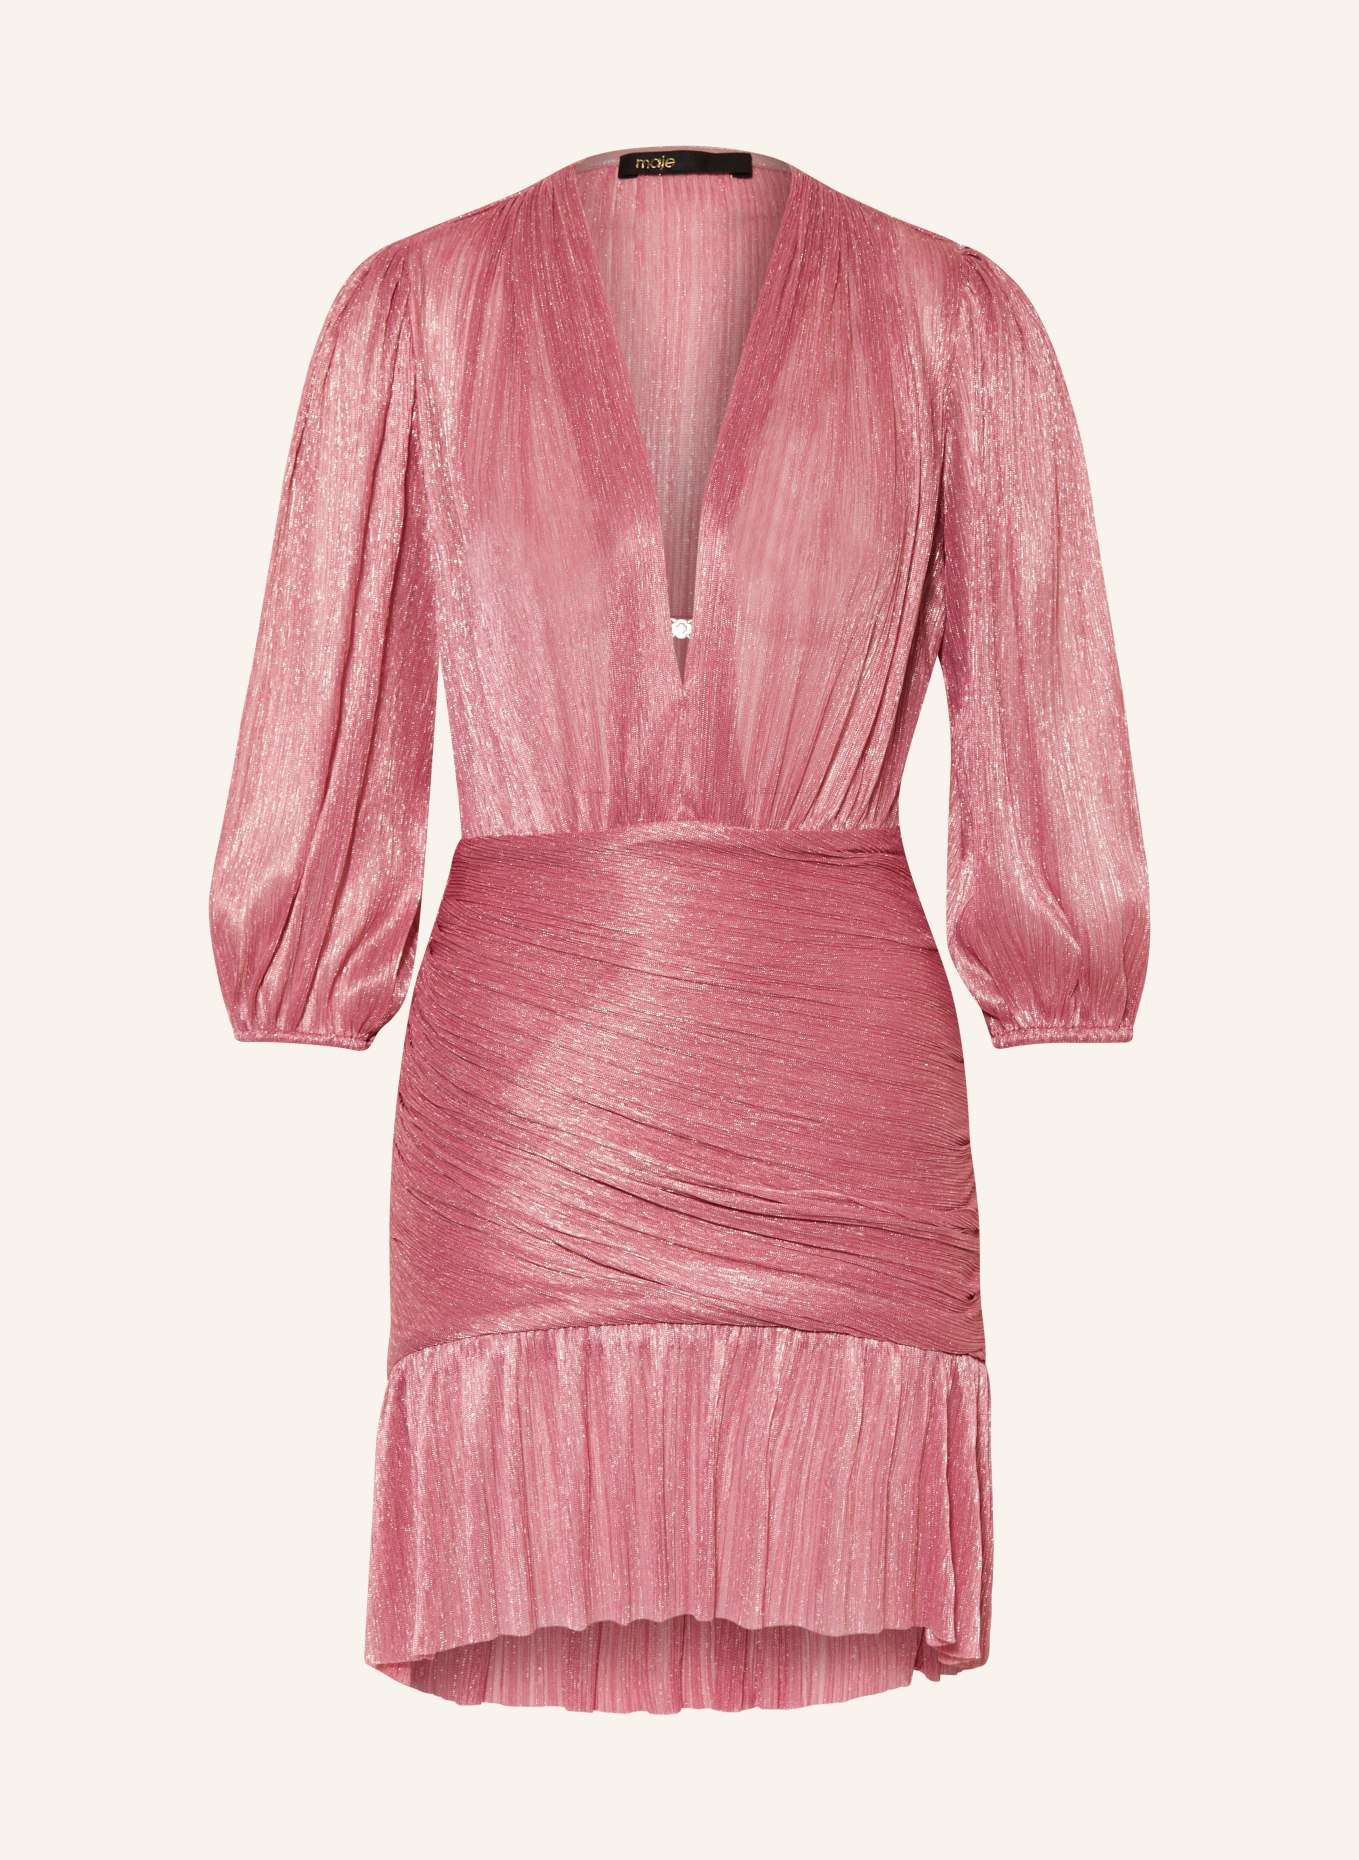 maje Kleid mit Glitzergarn und Plissees, Farbe: ROSA/ GOLD (Bild 1)